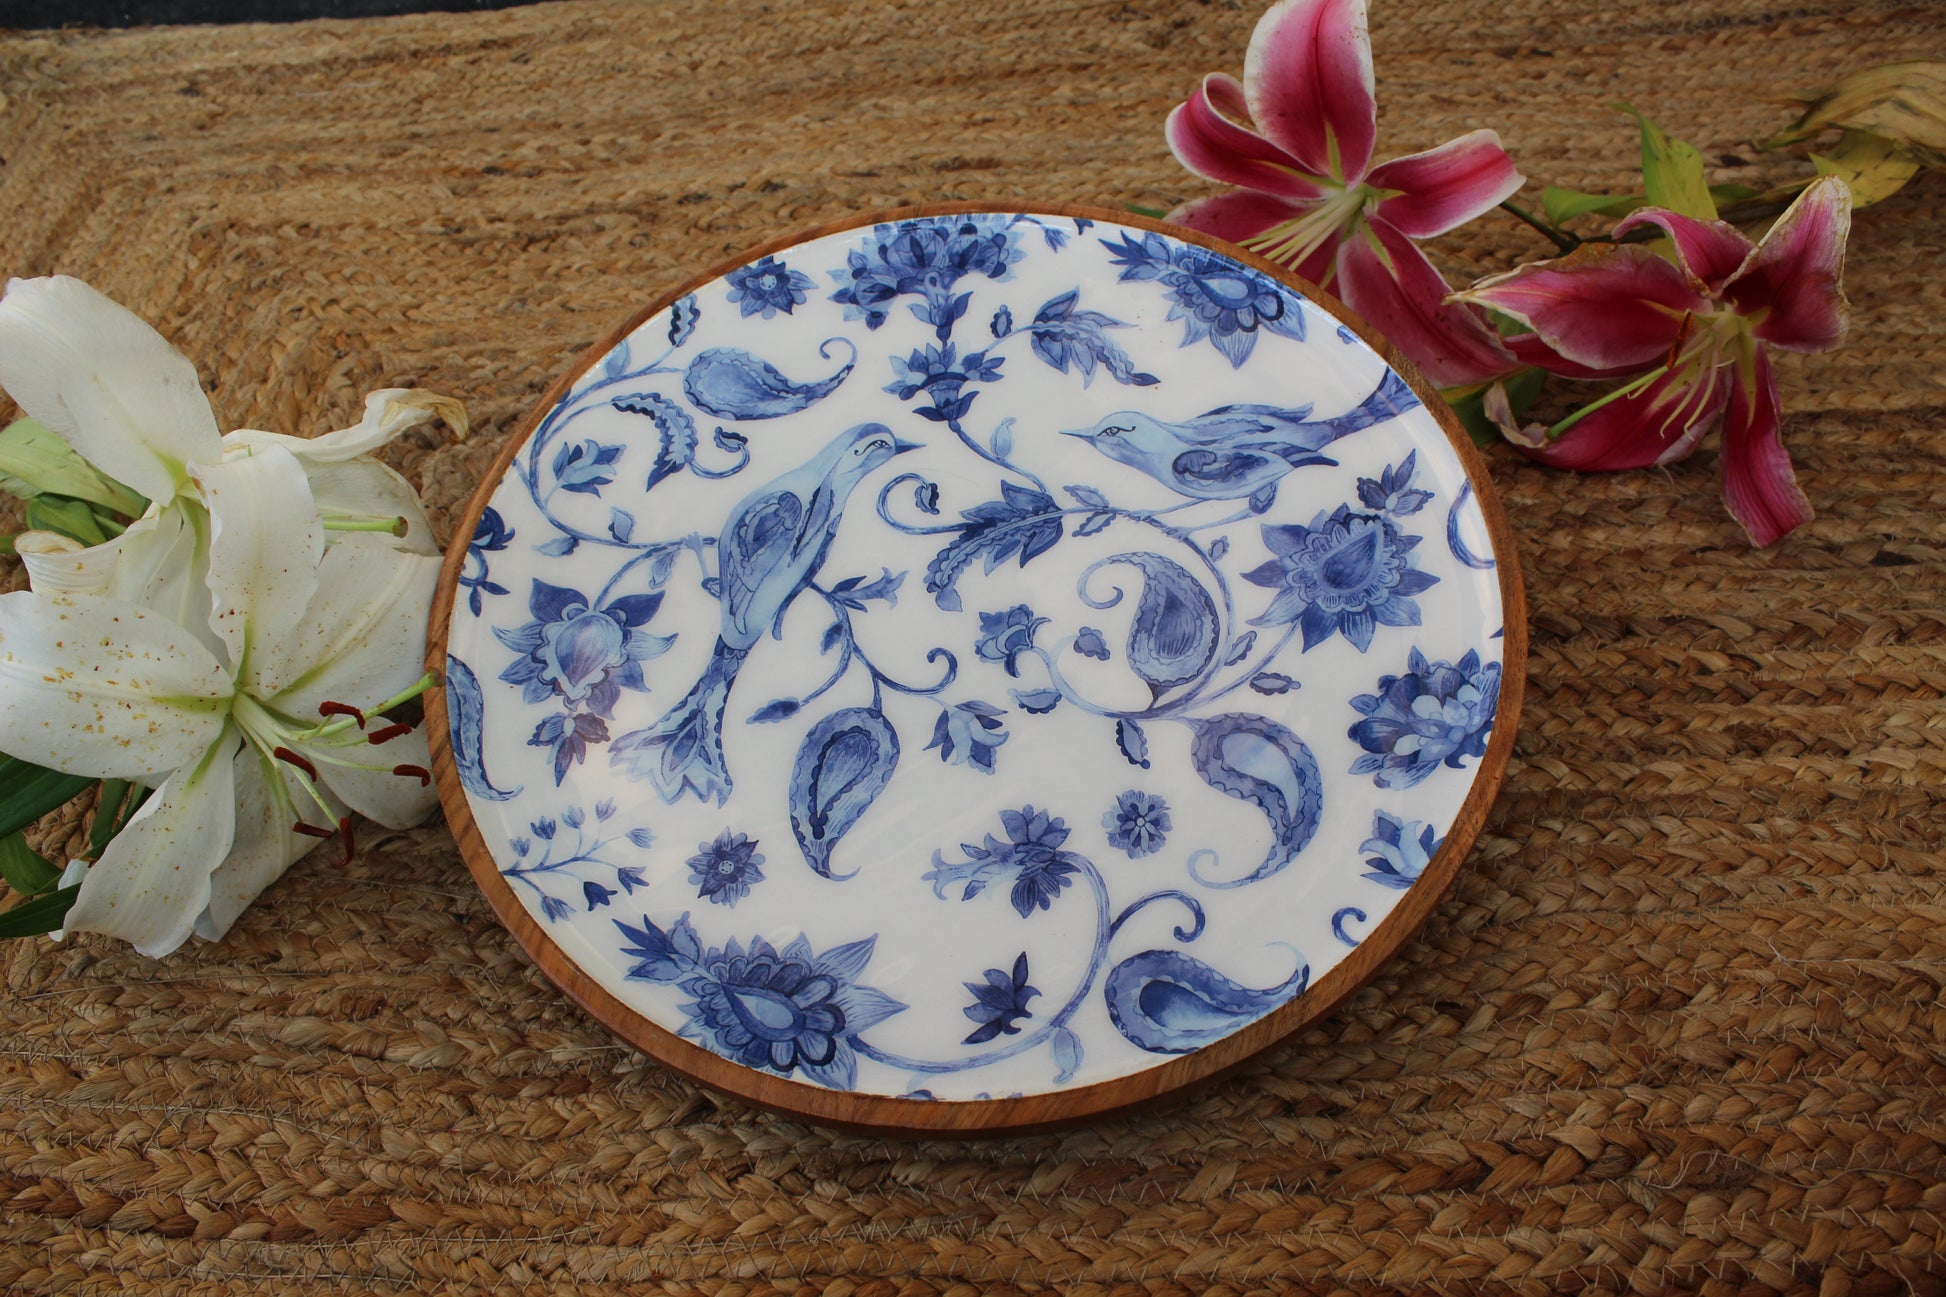 Floral Blue & White - Large Platter